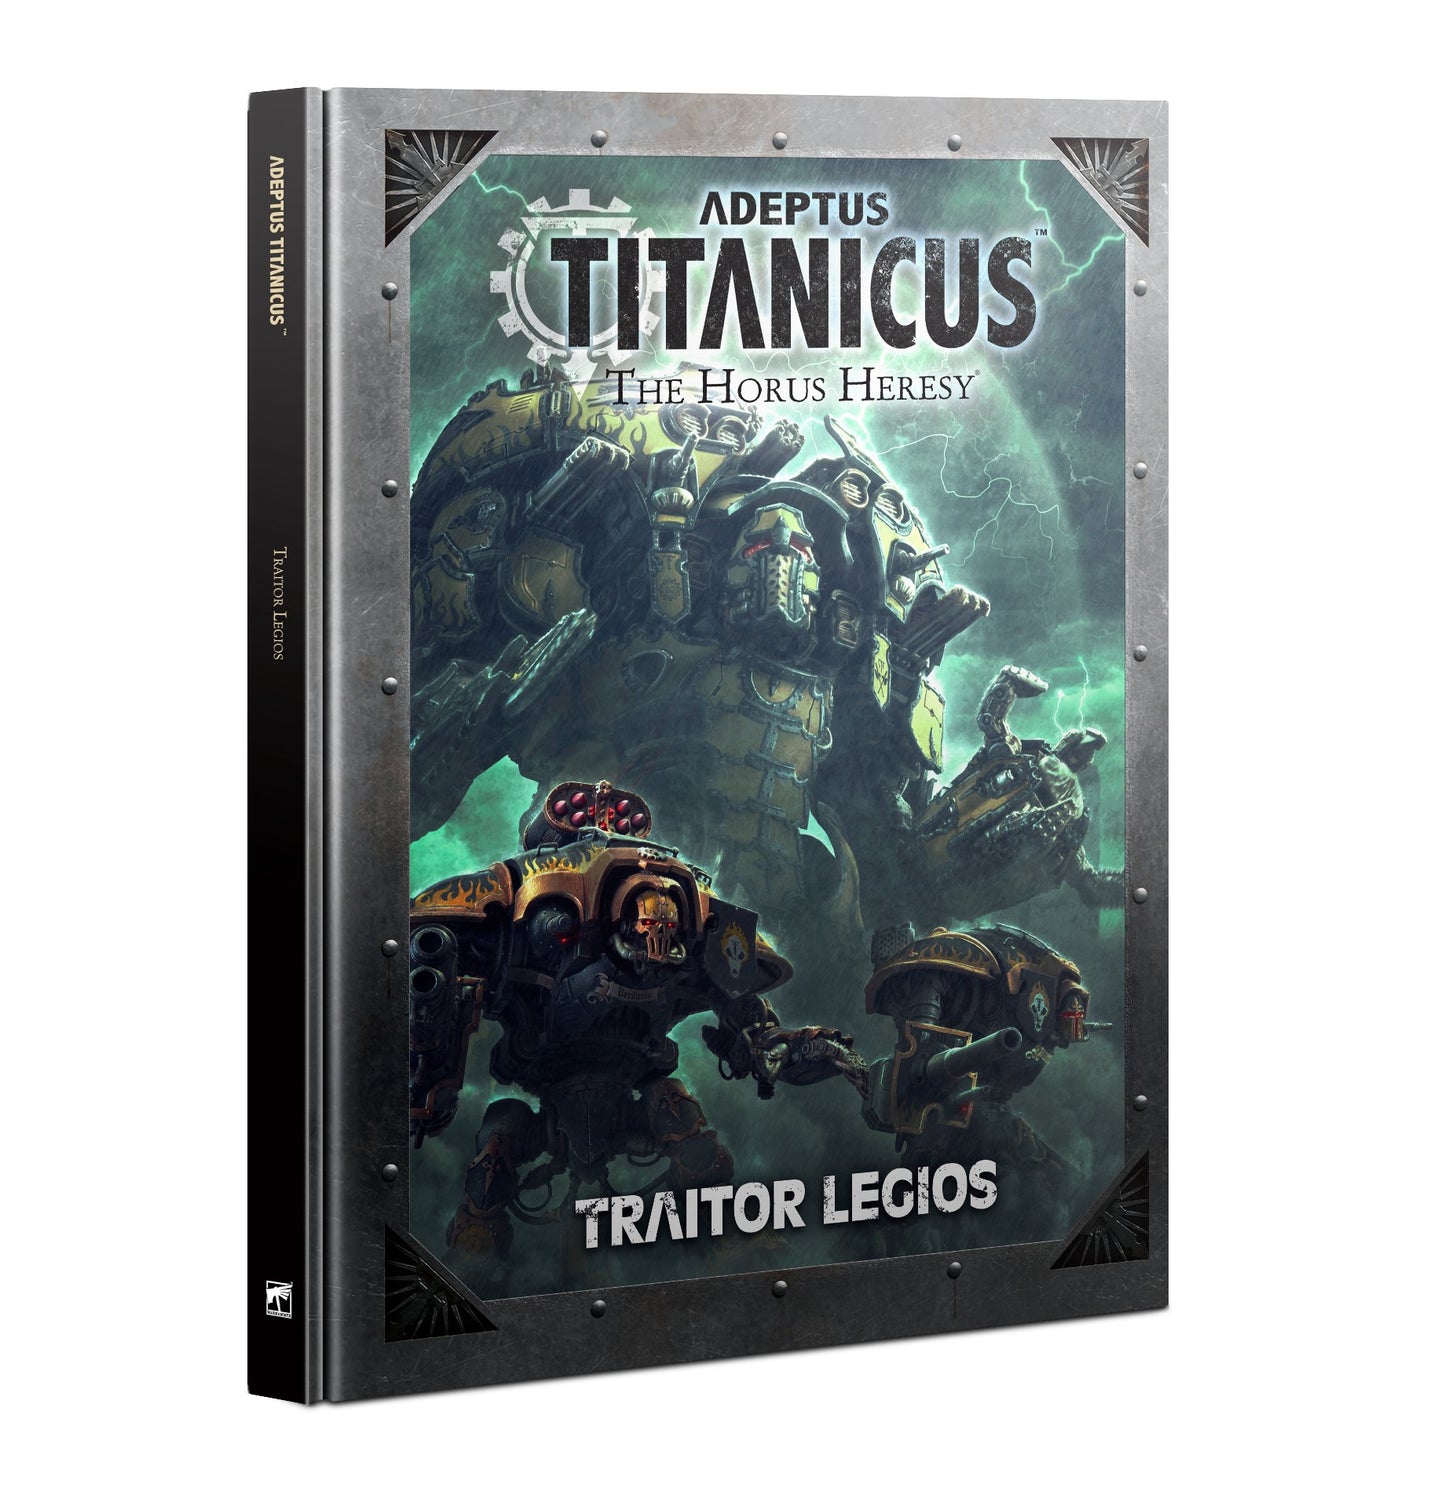 Adeptus Titanicus Traitor Legios Book